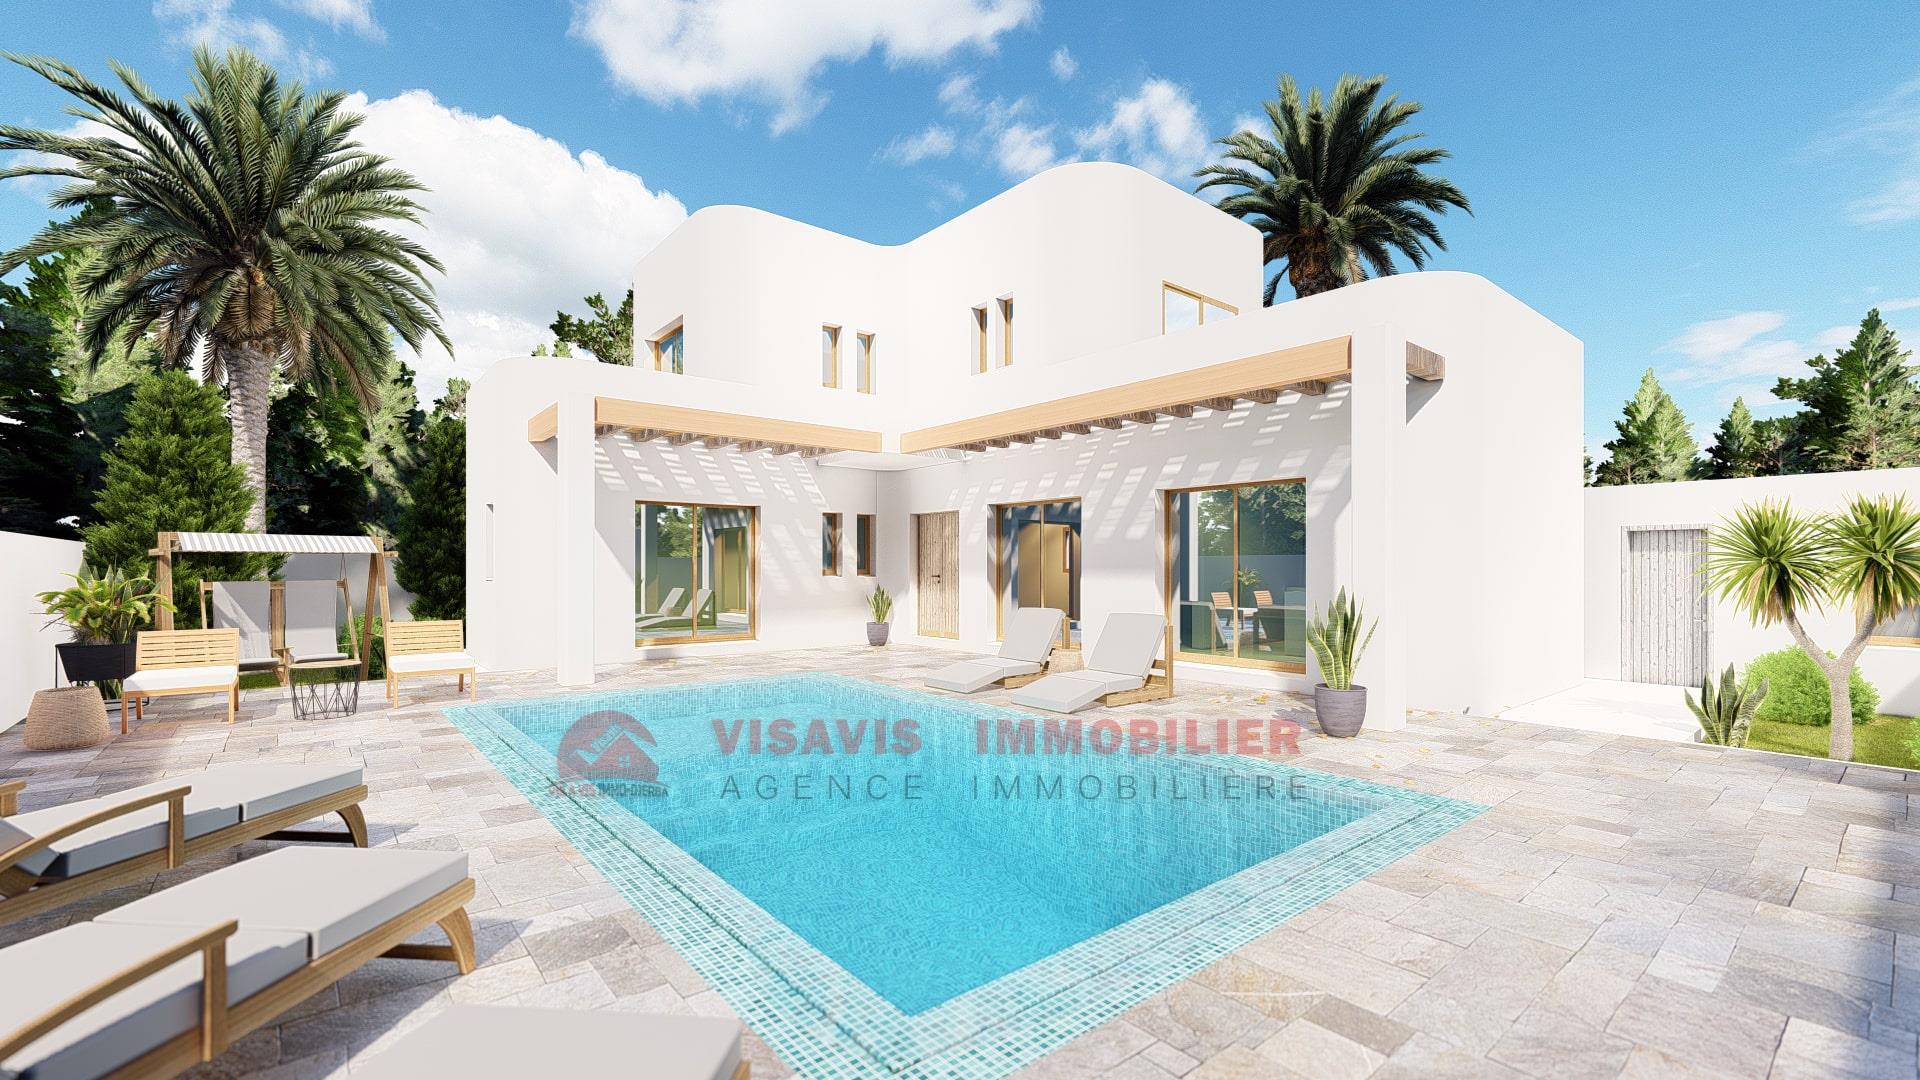 Ny villa til salg i Djerba - byområde - blå titel